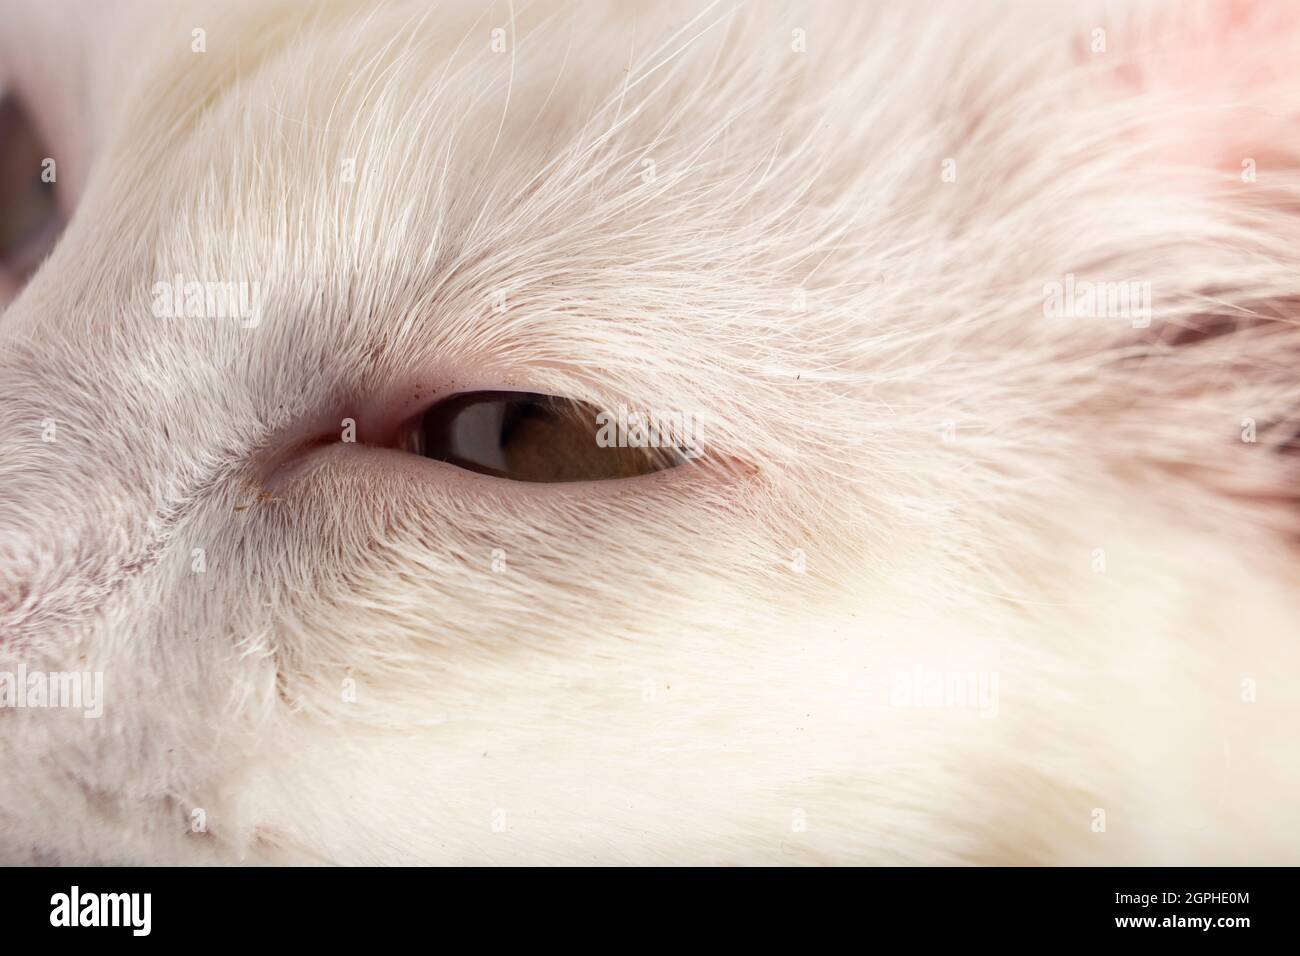 Occhi di gatto con pelliccia bianca Foto Stock